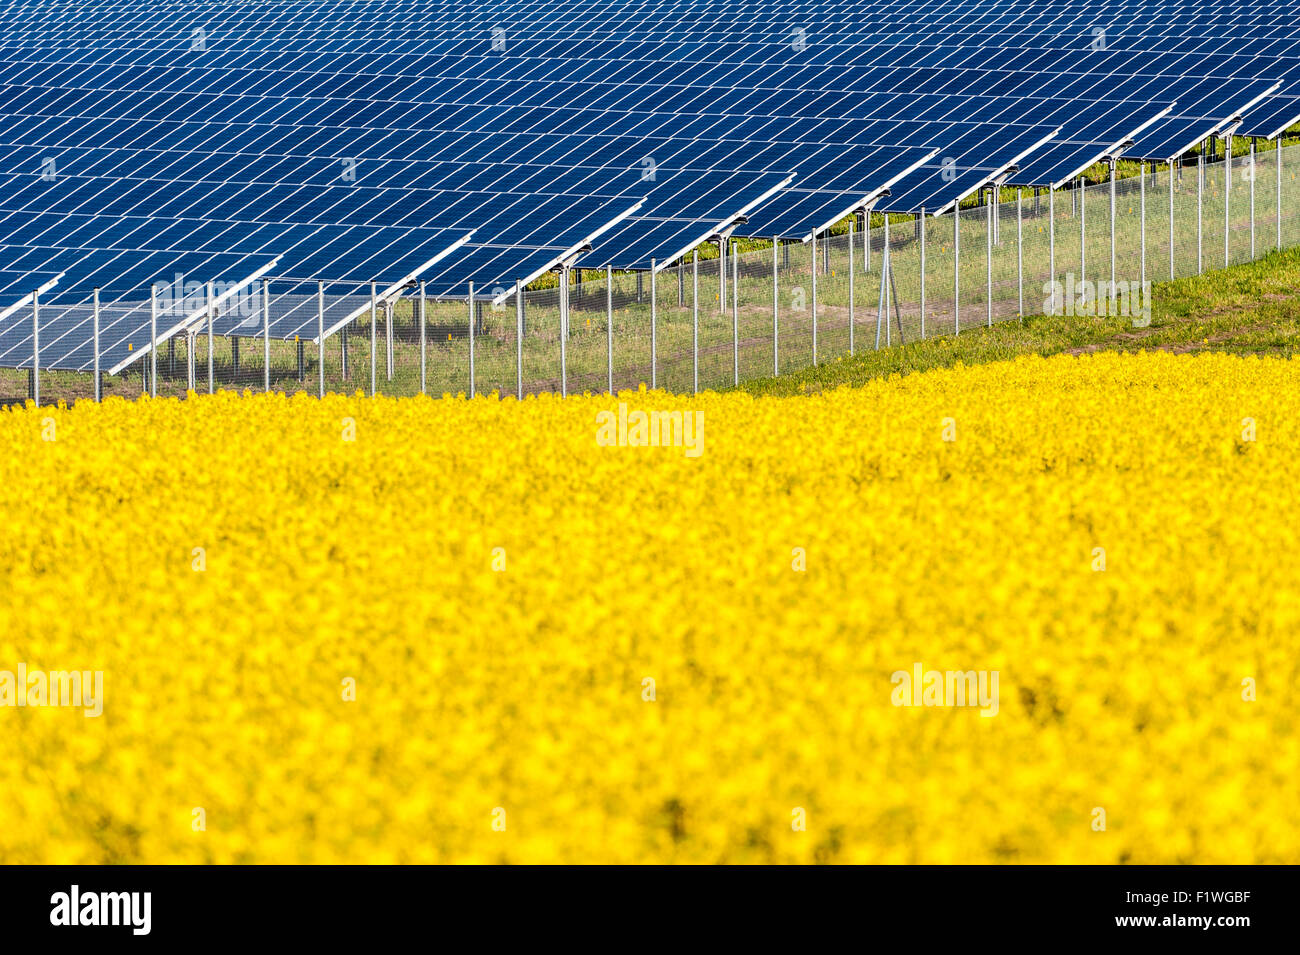 Solarpanele vor blühendem Rapsfeld Stock Photo